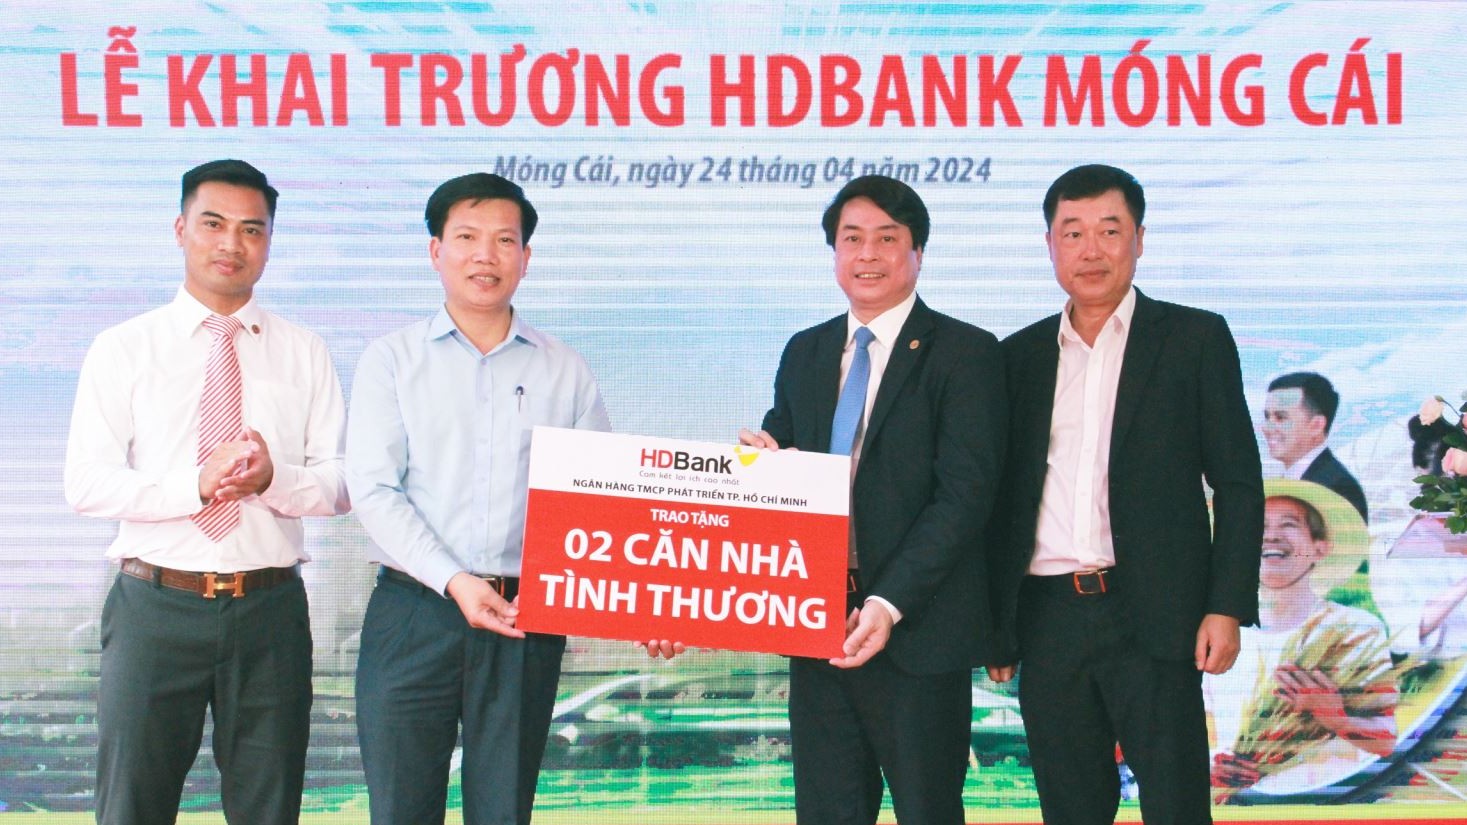 Mở thêm chi nhánh tại Quảng Ninh, HDBank tăng đầu tư vào khu kinh tế cửa khẩu trọng điểm phía Bắc